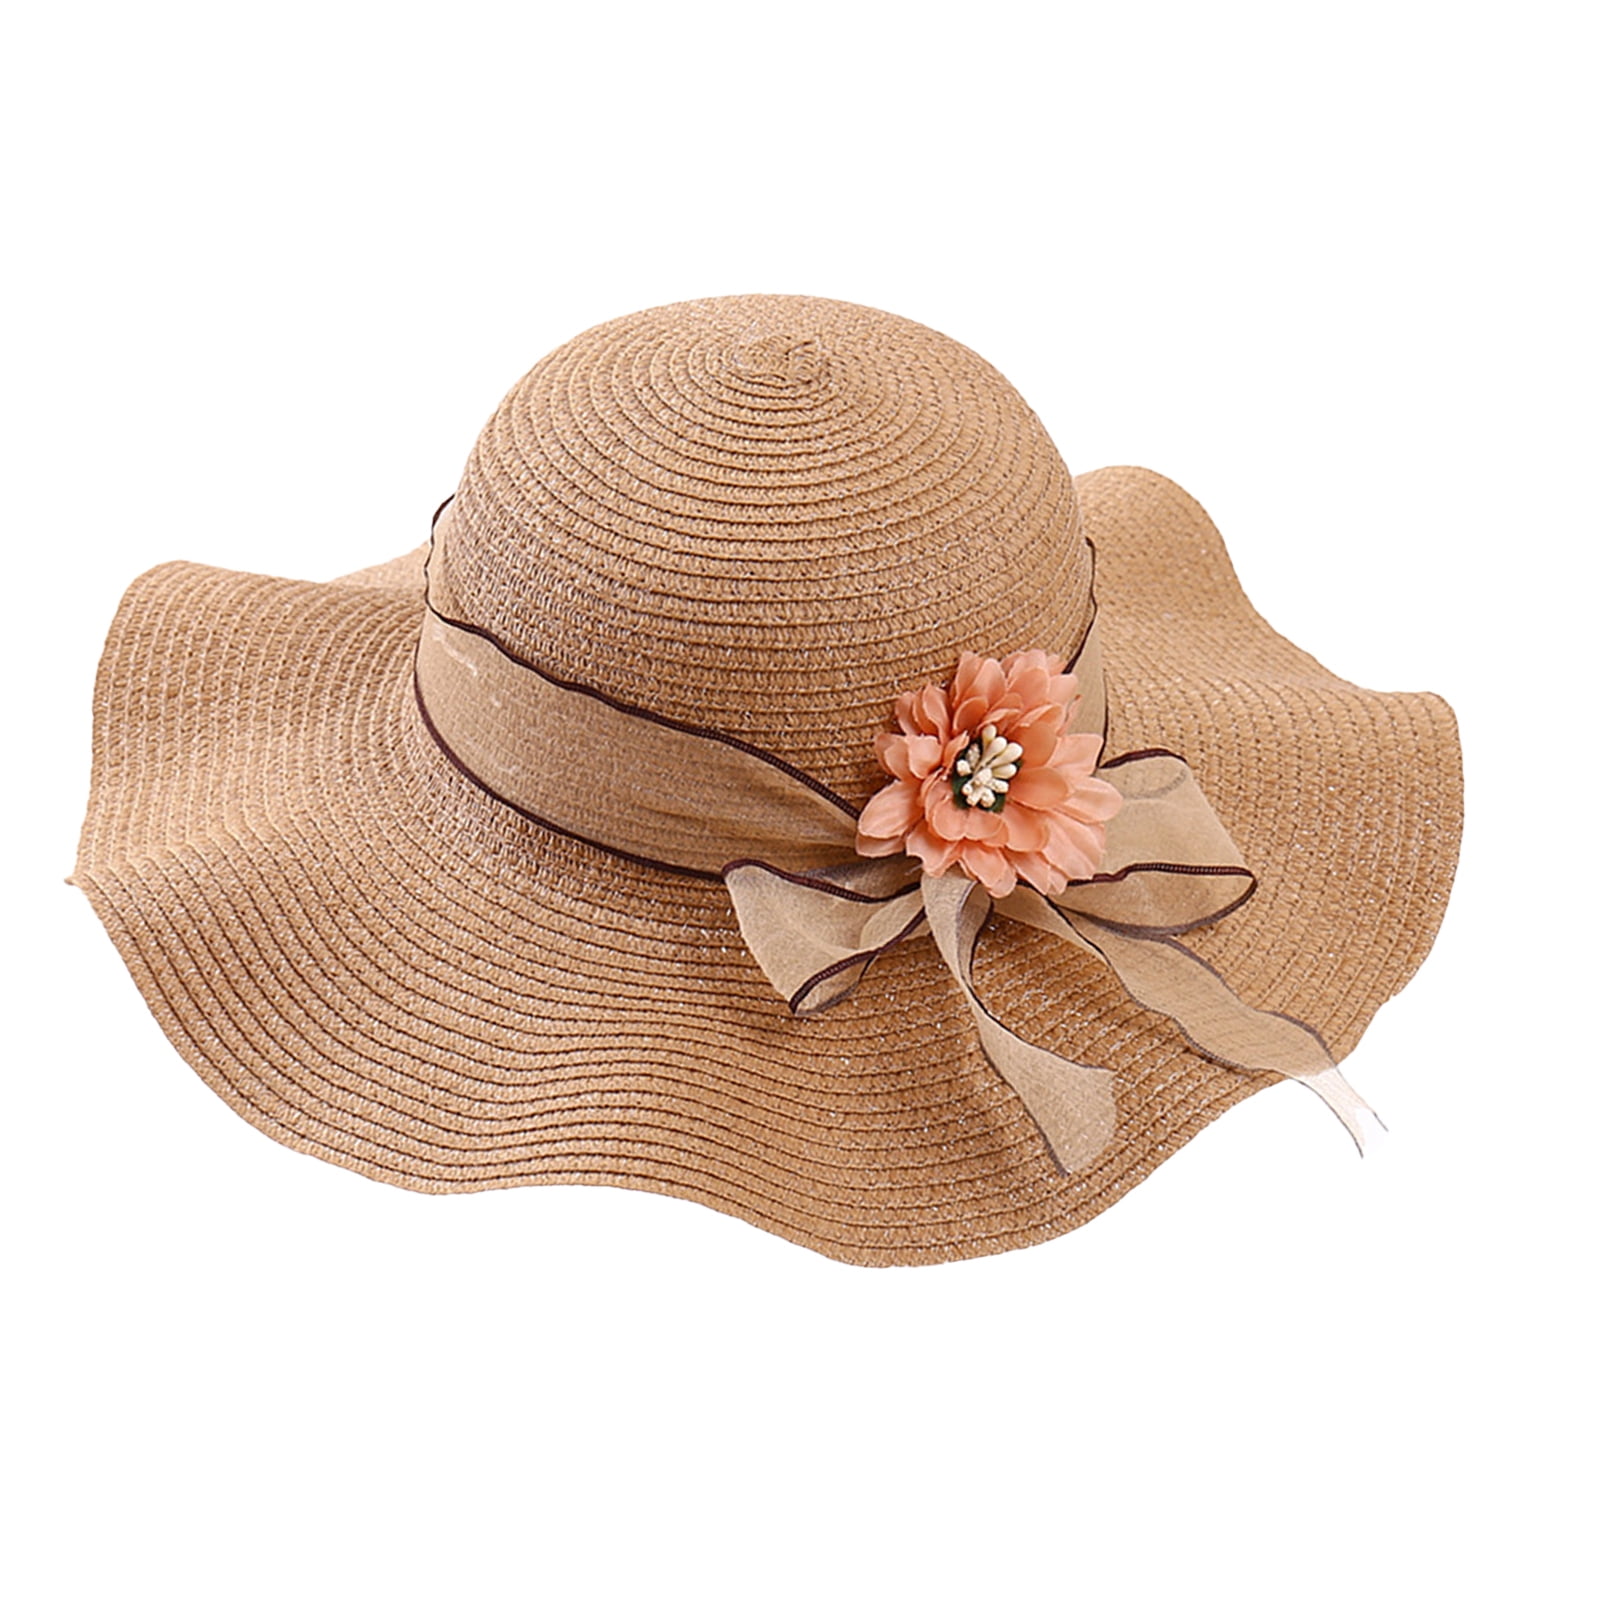 Beautiful Summer Womens Sun Hat Flower Straw Hat Wide Brim Sea Beach Sun  Hat Bone Capeline Chapeaux For Elegant Lady From Wishlove7878, $6.08